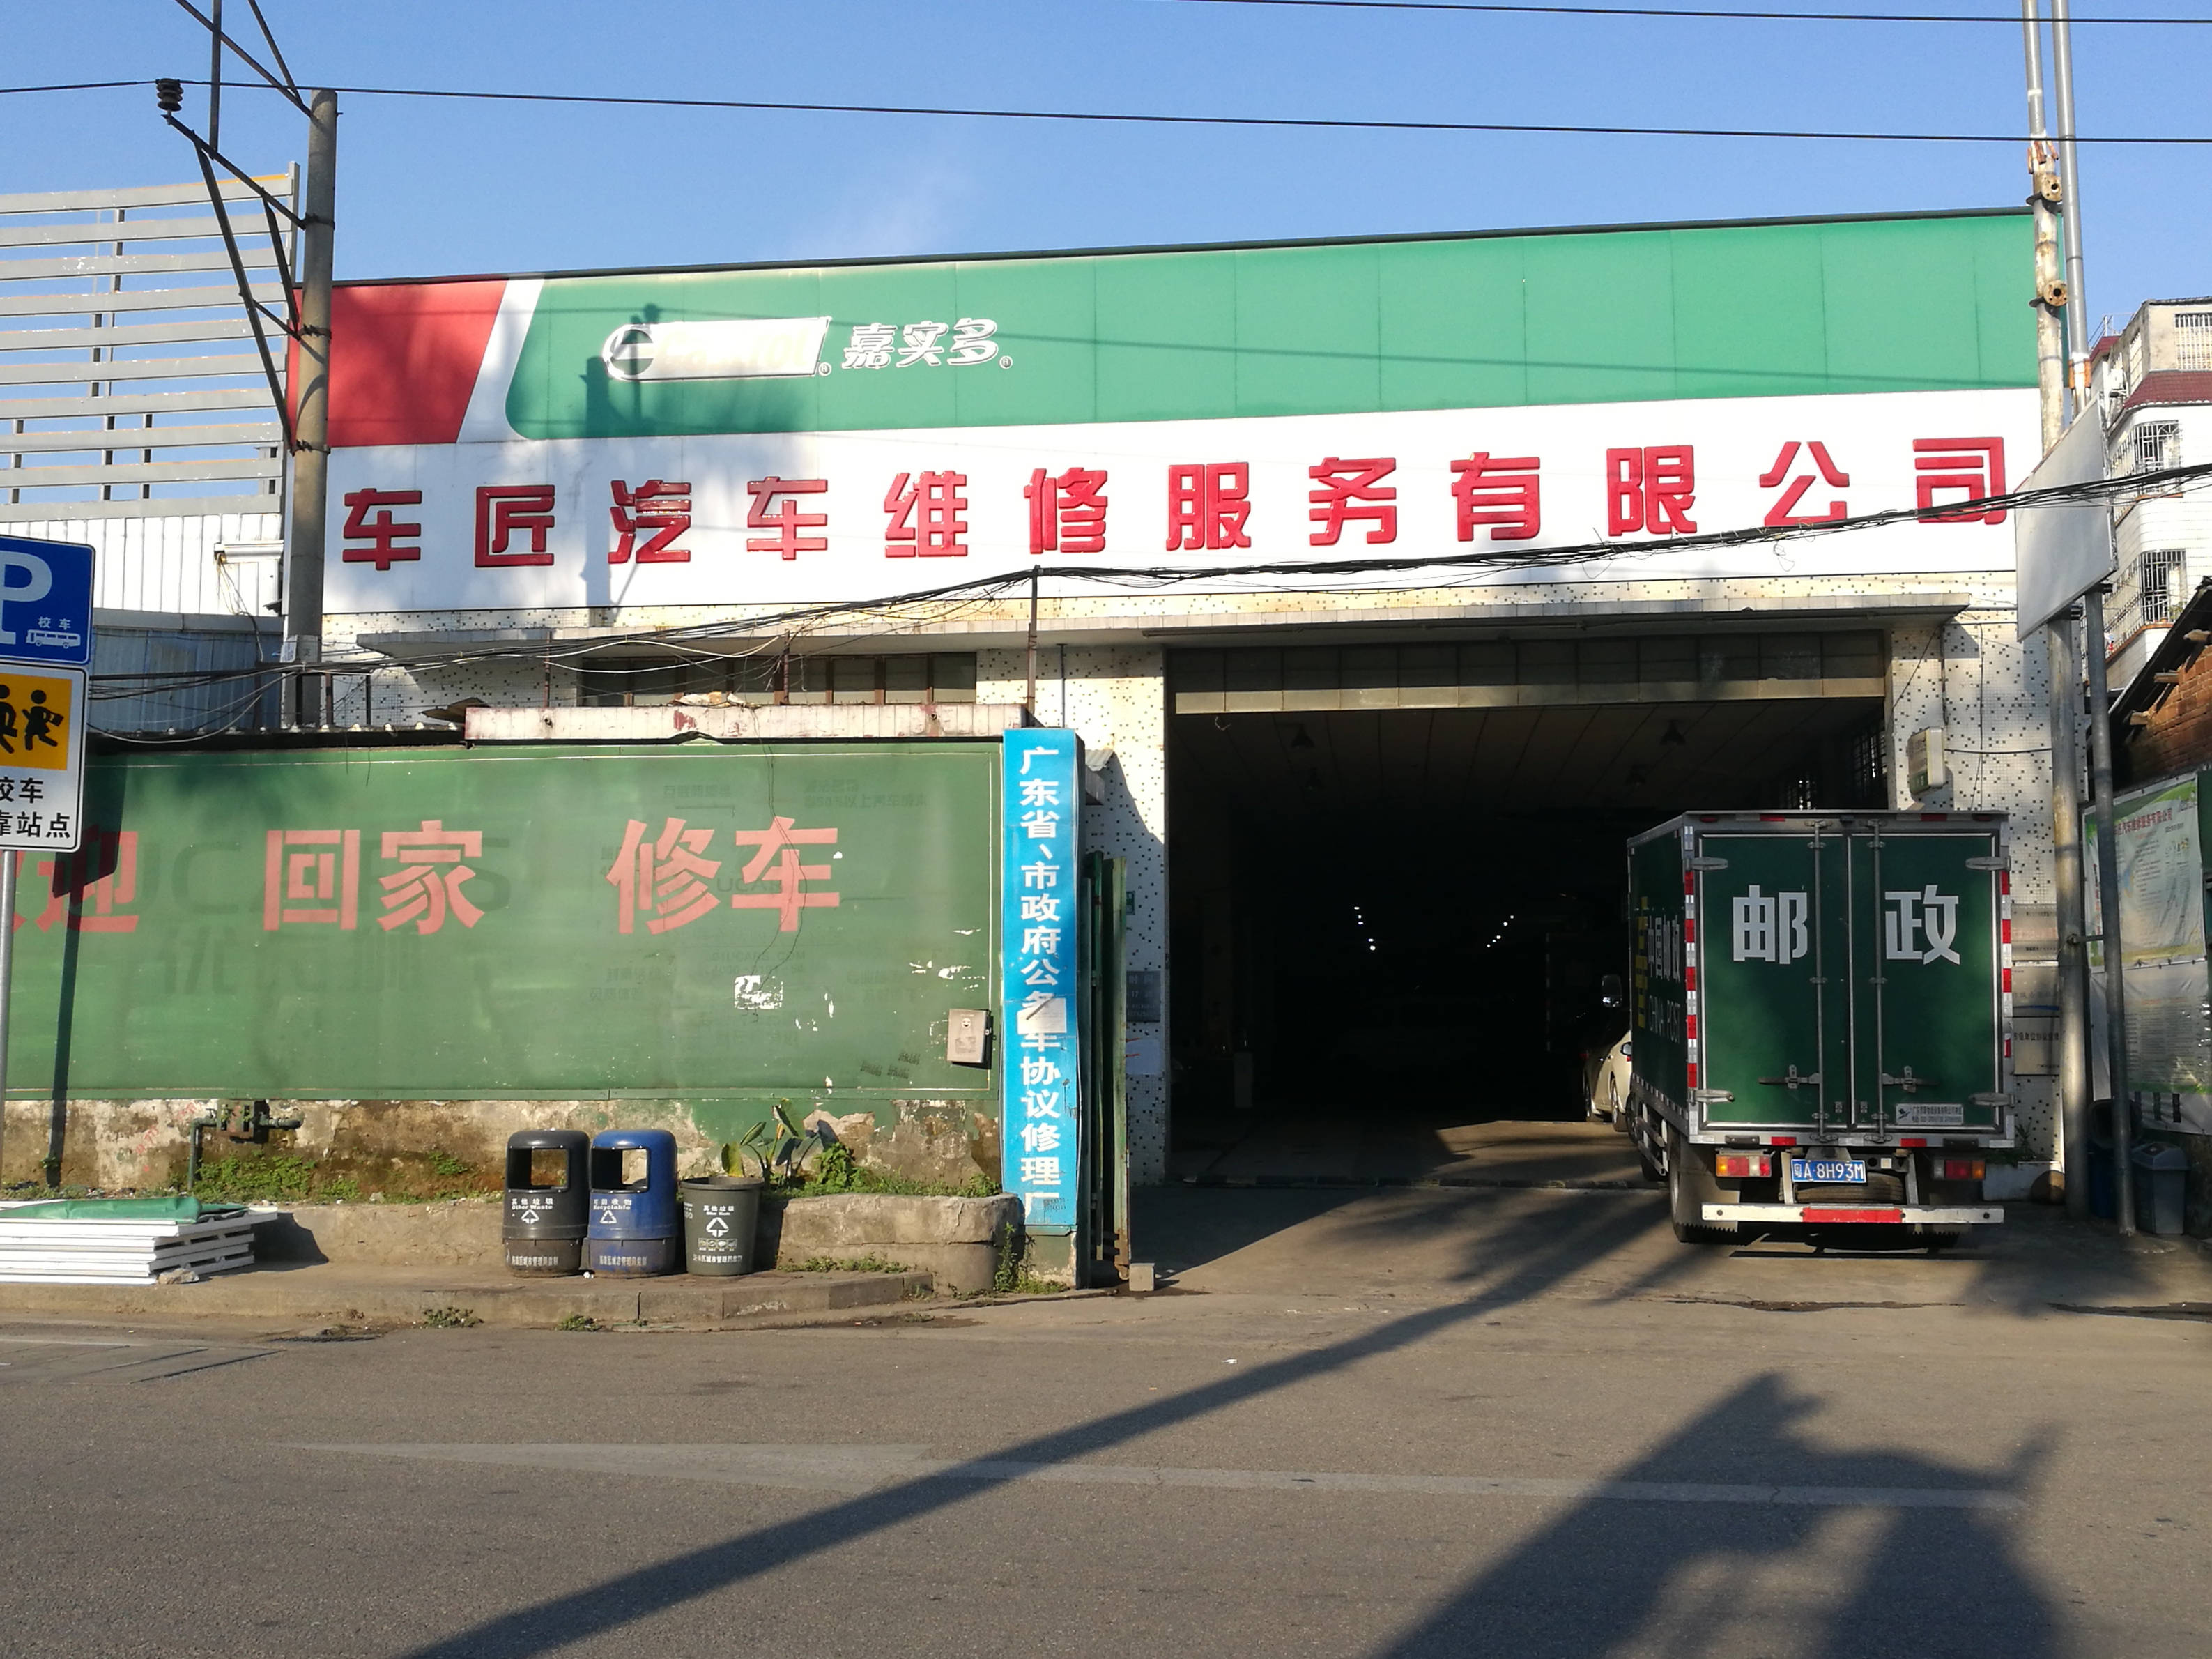 广州车匠汽车维修服务有限公司 枫车合作门店 第1张